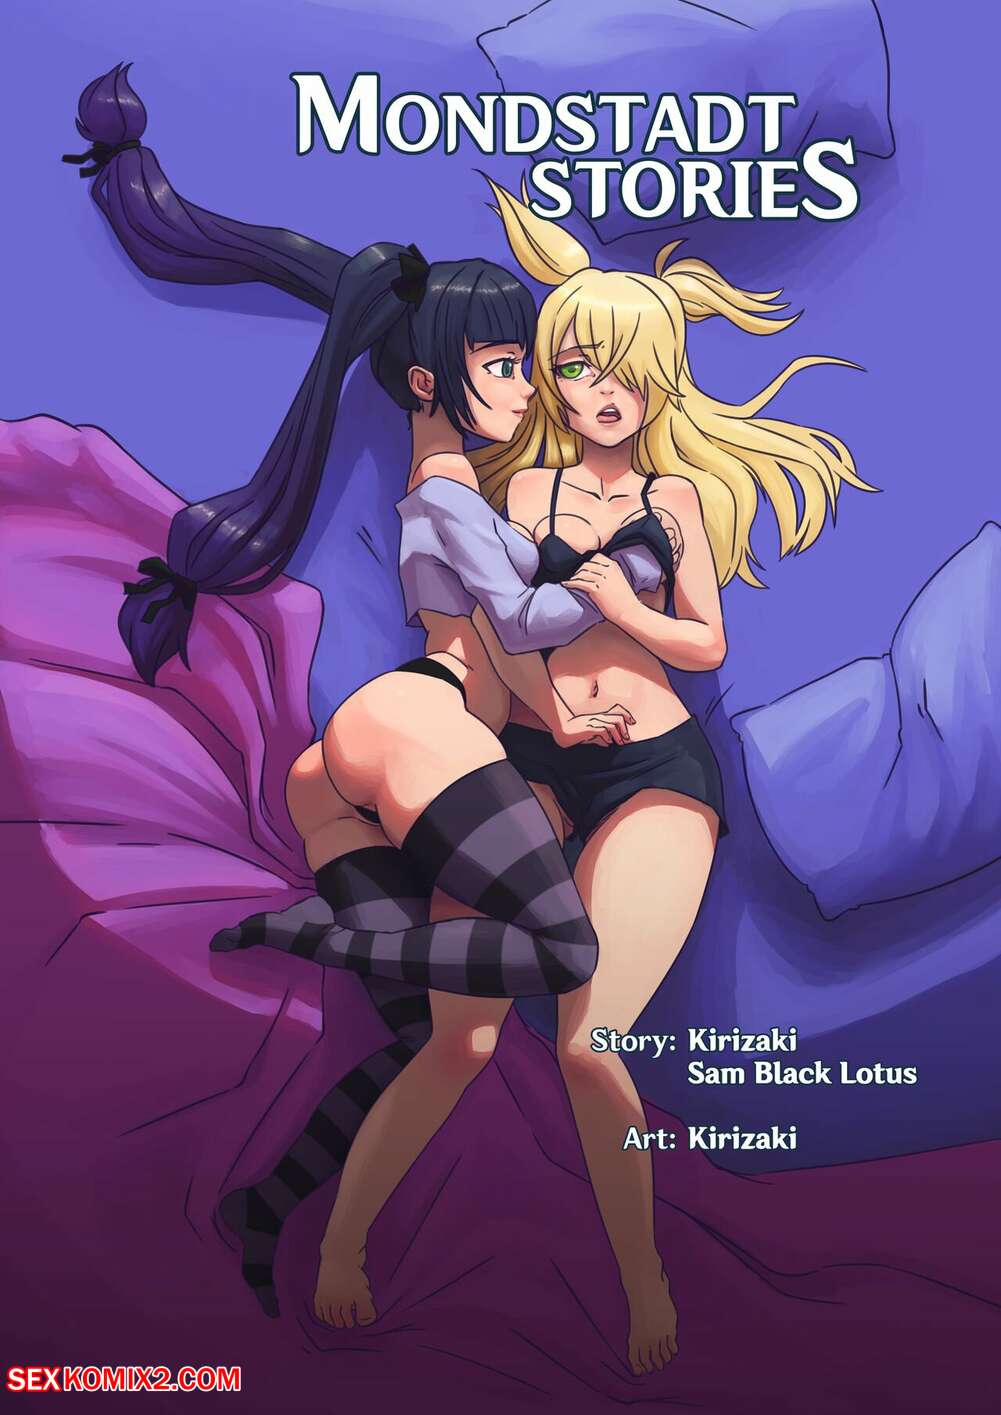 1001px x 1415px - âœ…ï¸ Porn comic Mondstadt Stories. Kirizaki Sex comic hot brunette sorceress  | Porn comics in English for adults only | sexkomix2.com